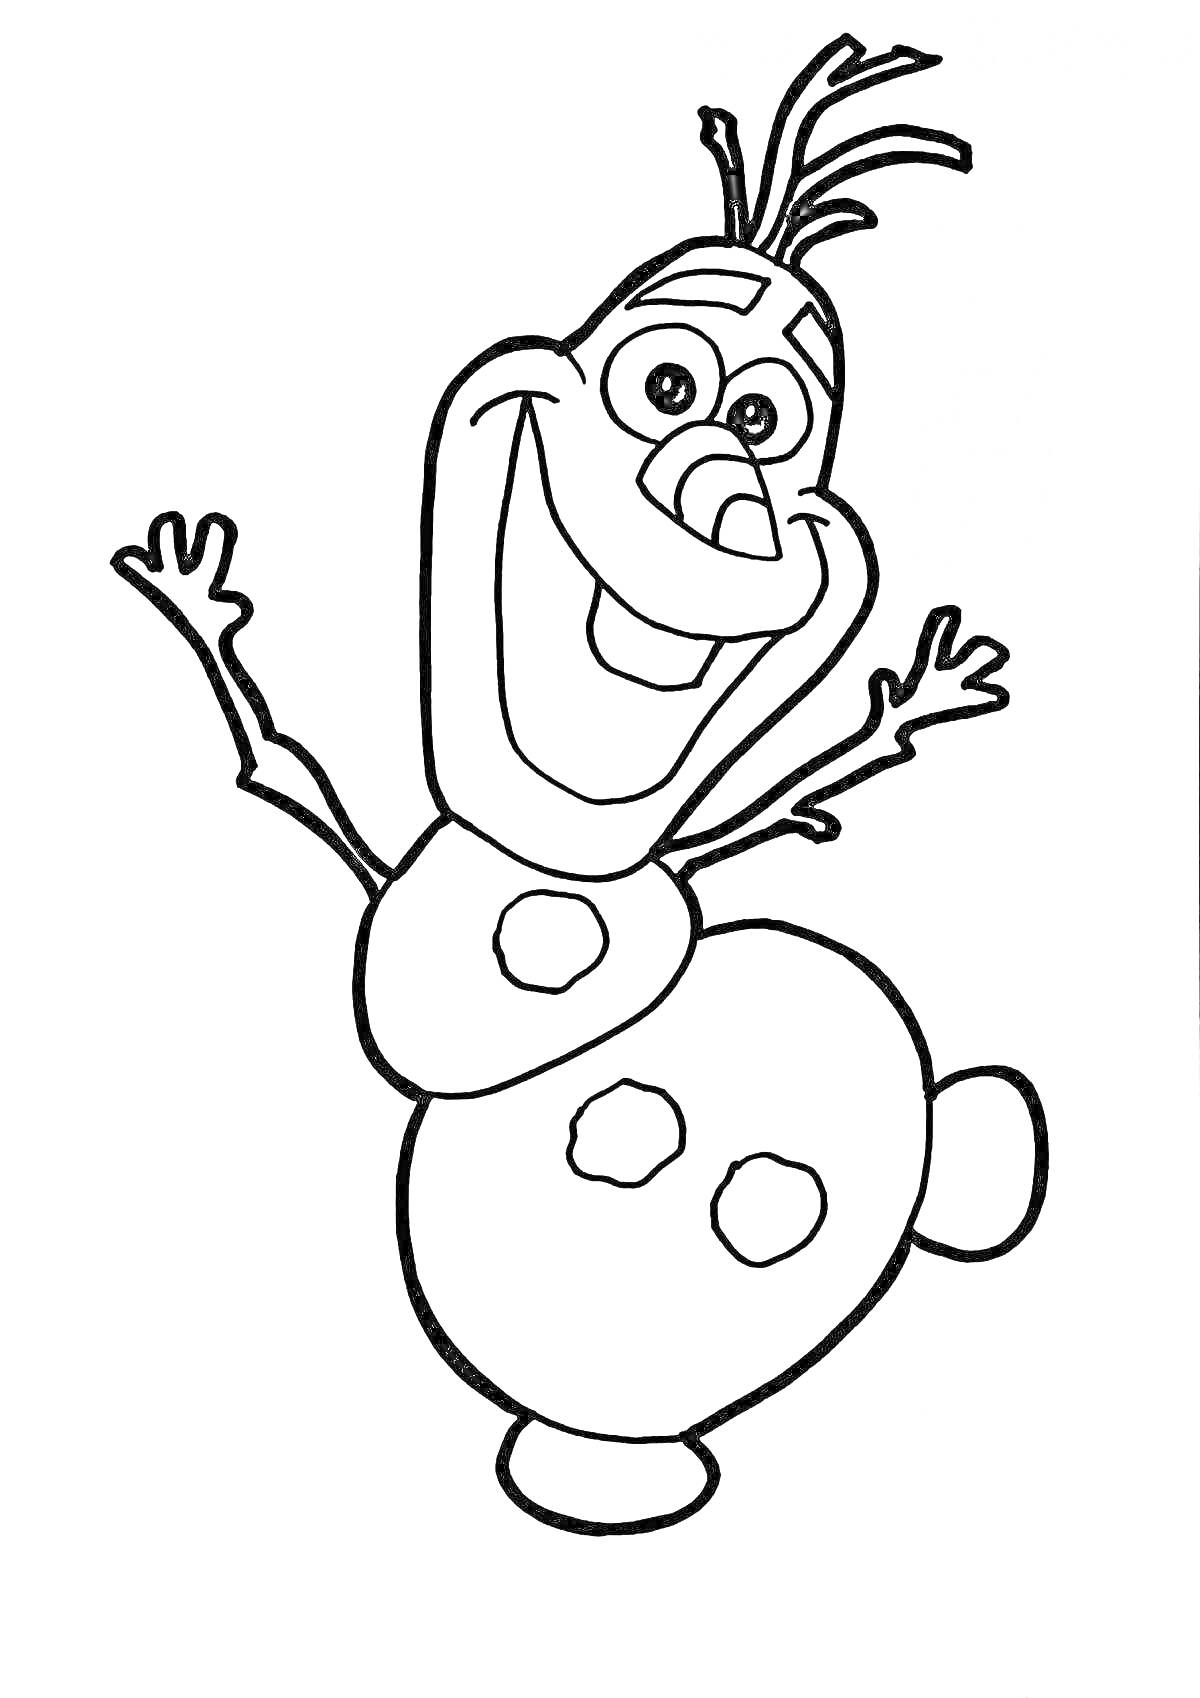 Раскраска Олаф, радостный снеговик, с поднятыми руками и ногой, улыбка, морковный нос, три уголька на теле, волосы-веточки